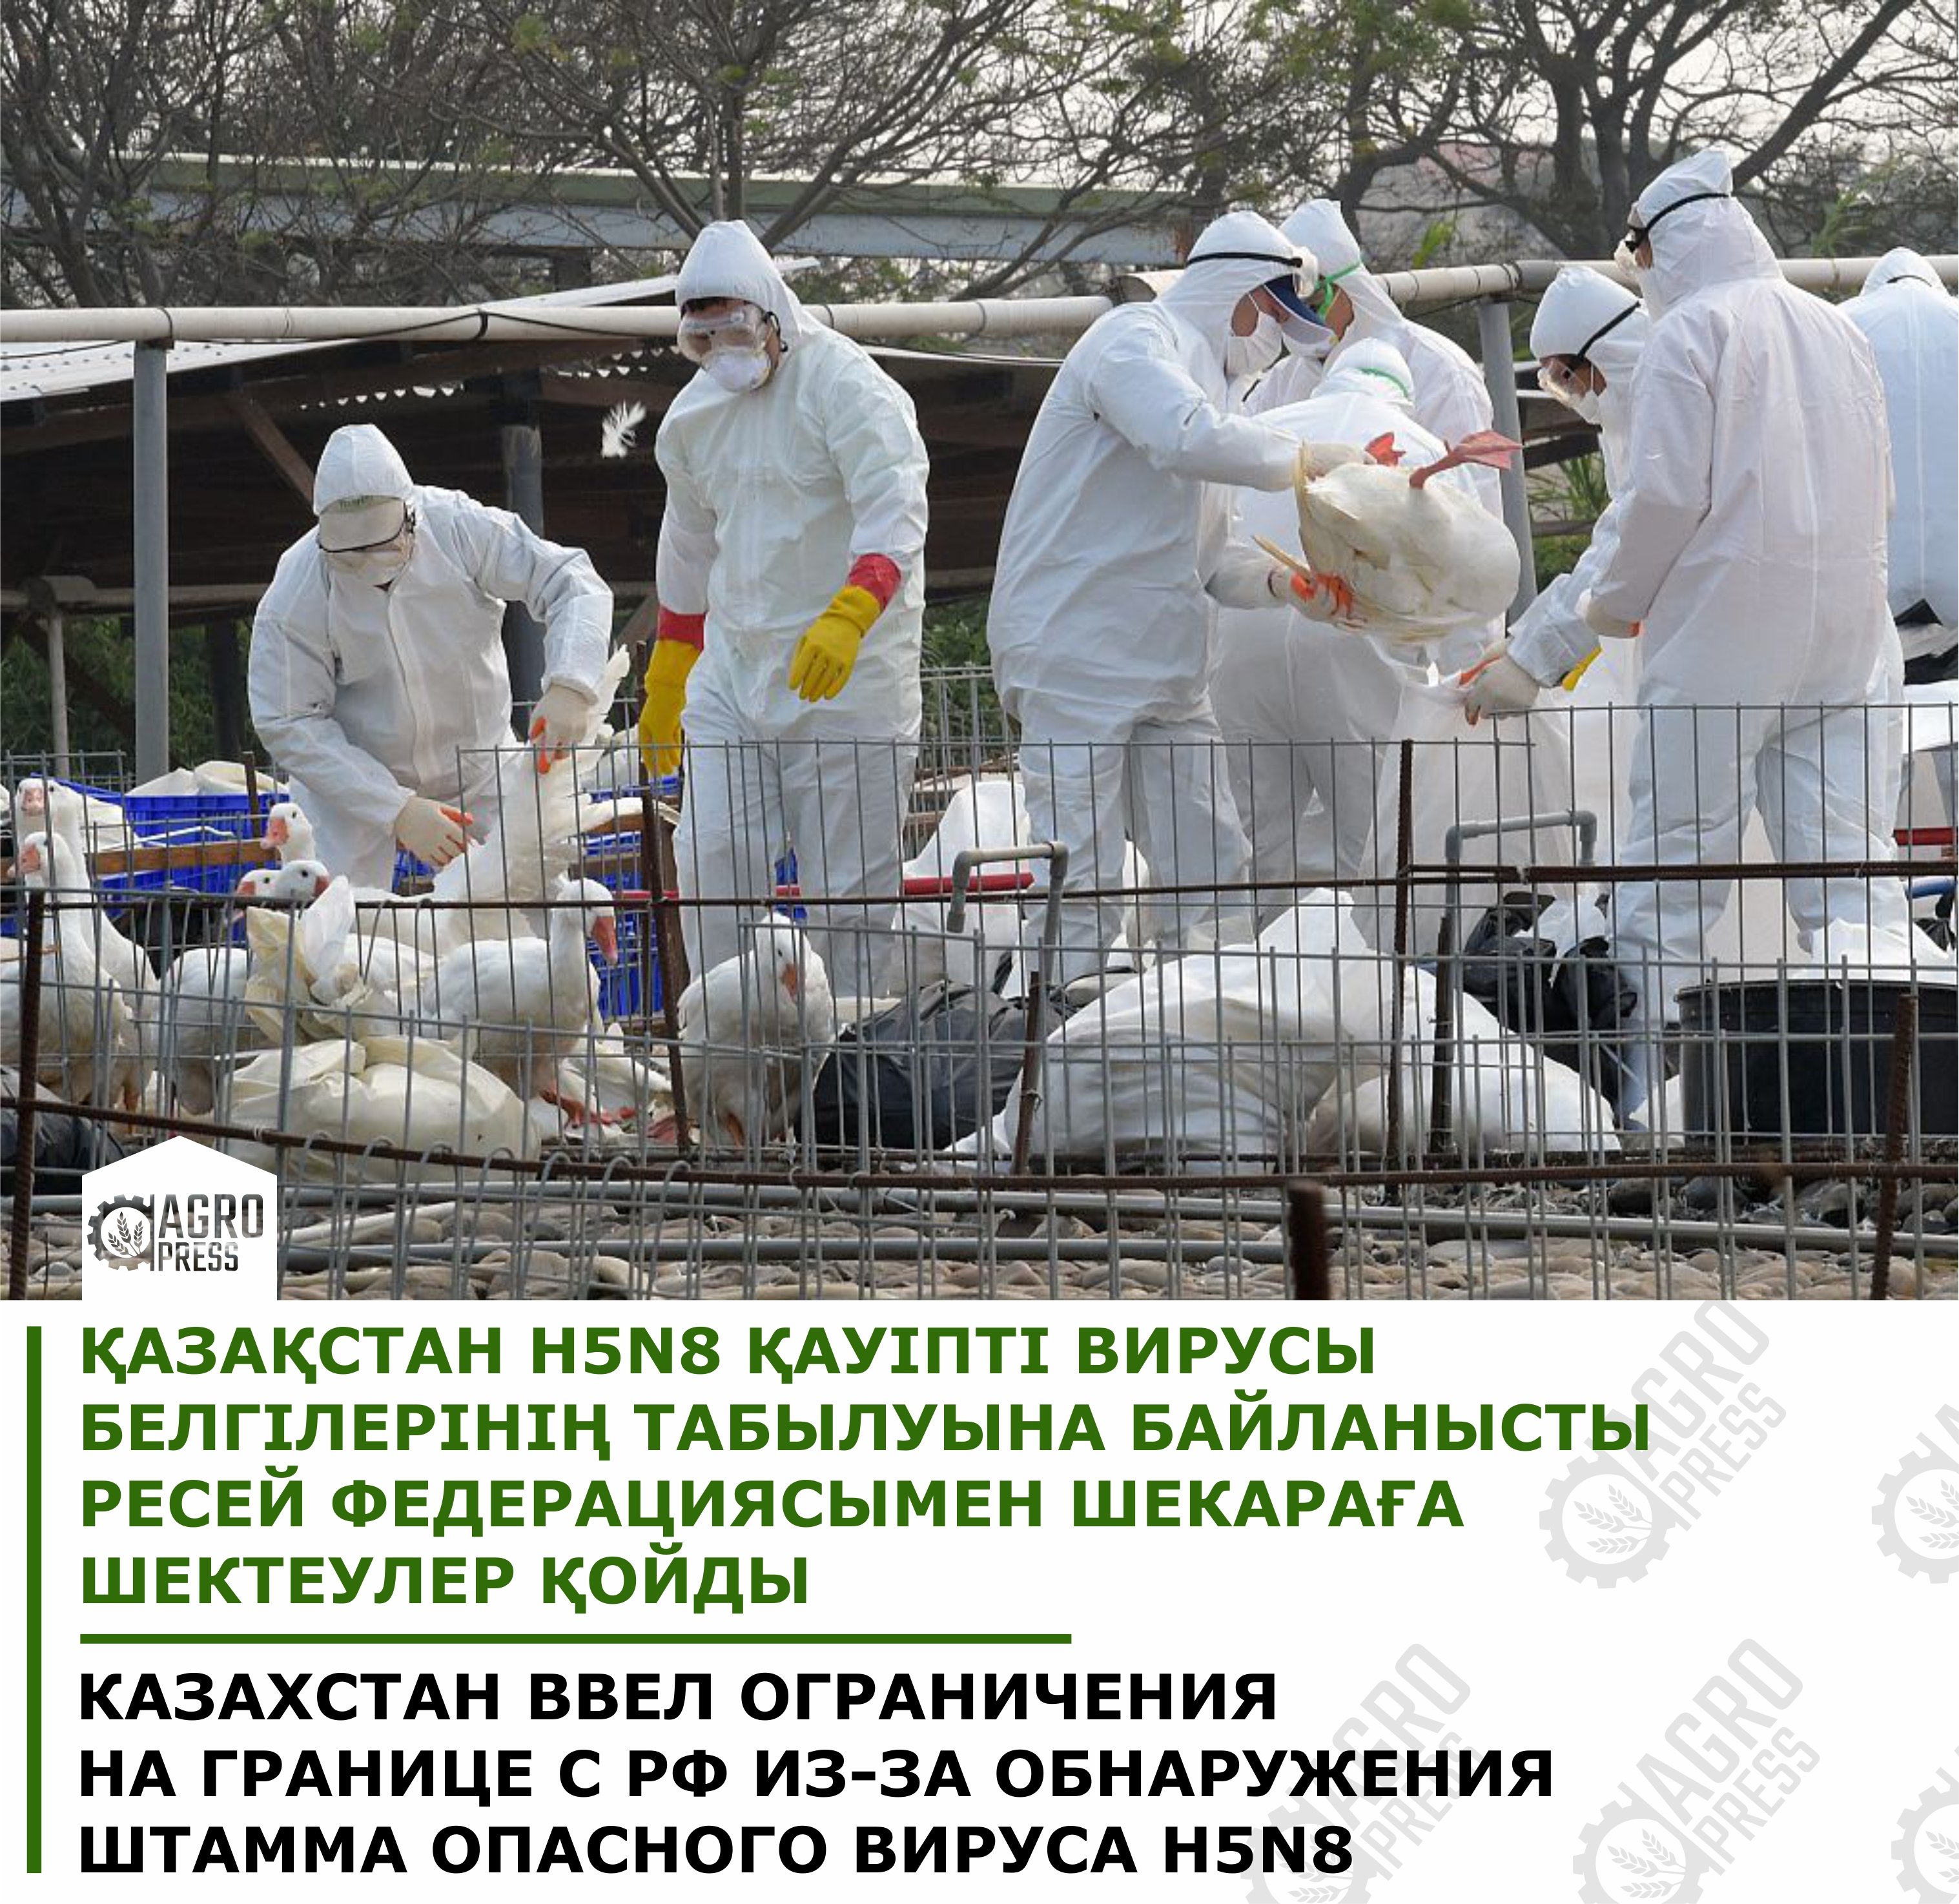 Казахстан ввел ограничения на границе с РФ из-за обнаружения штамма опасного вируса H5N8